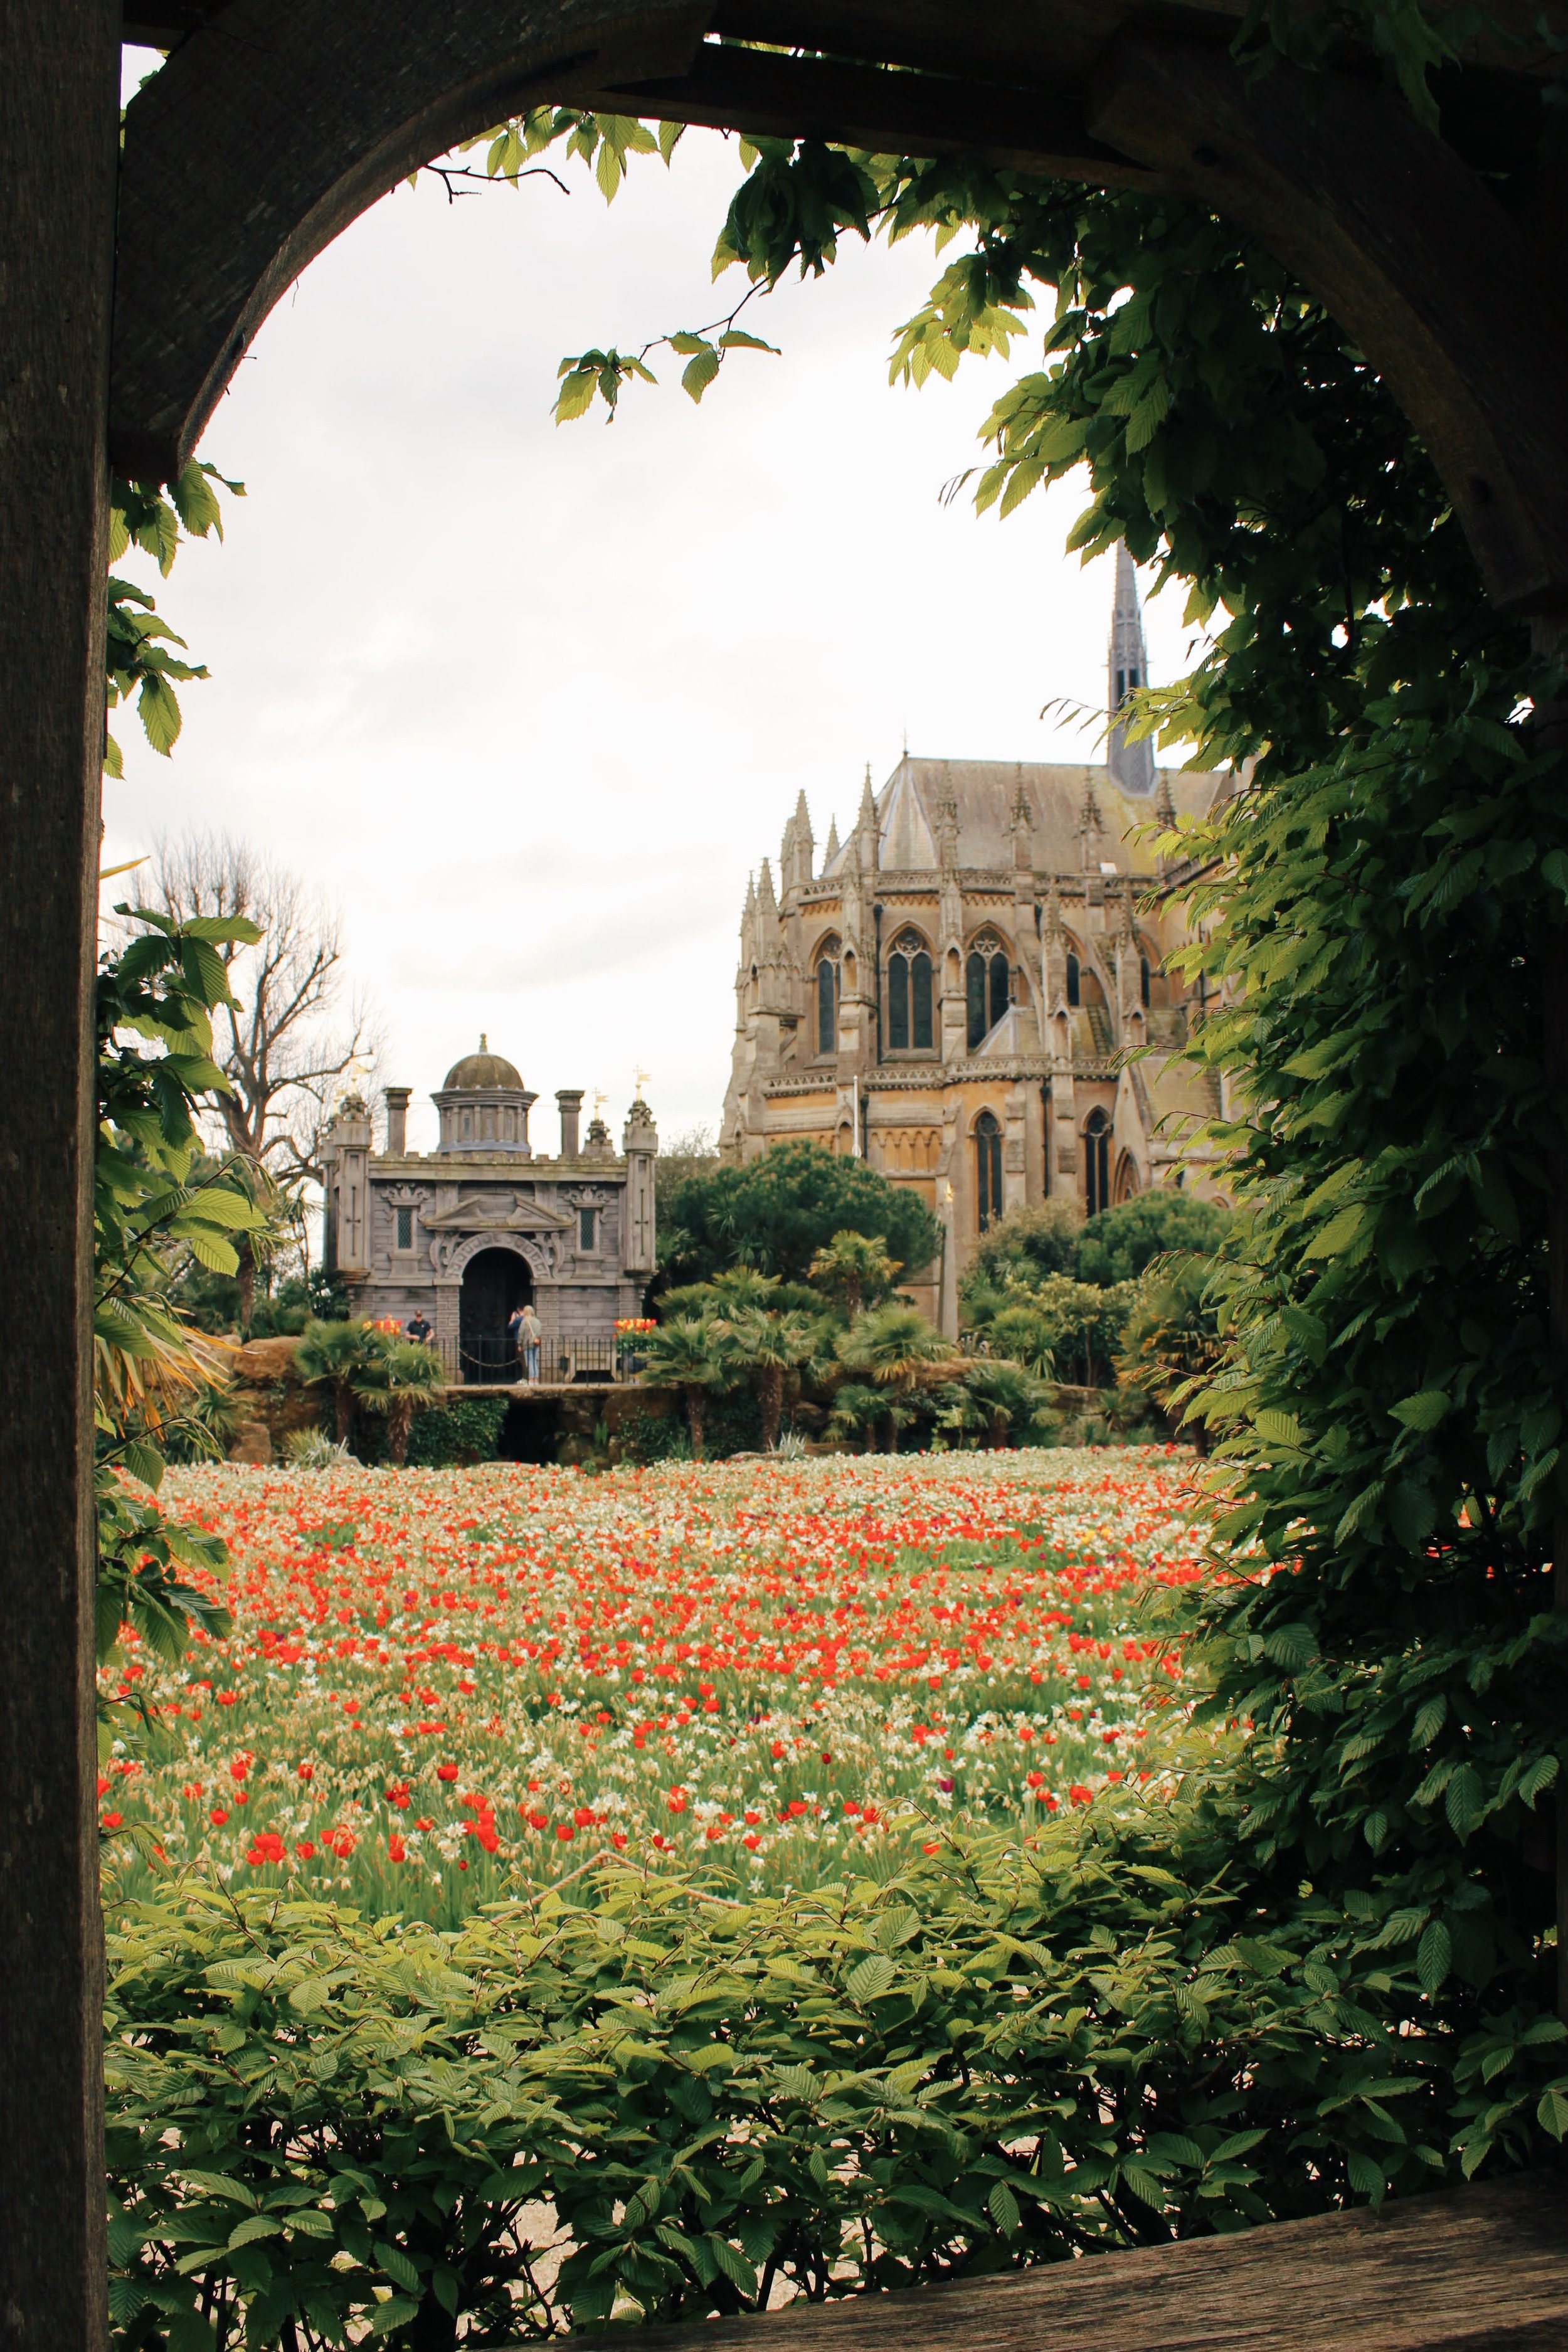 arundel castle garden tulips9.jpg